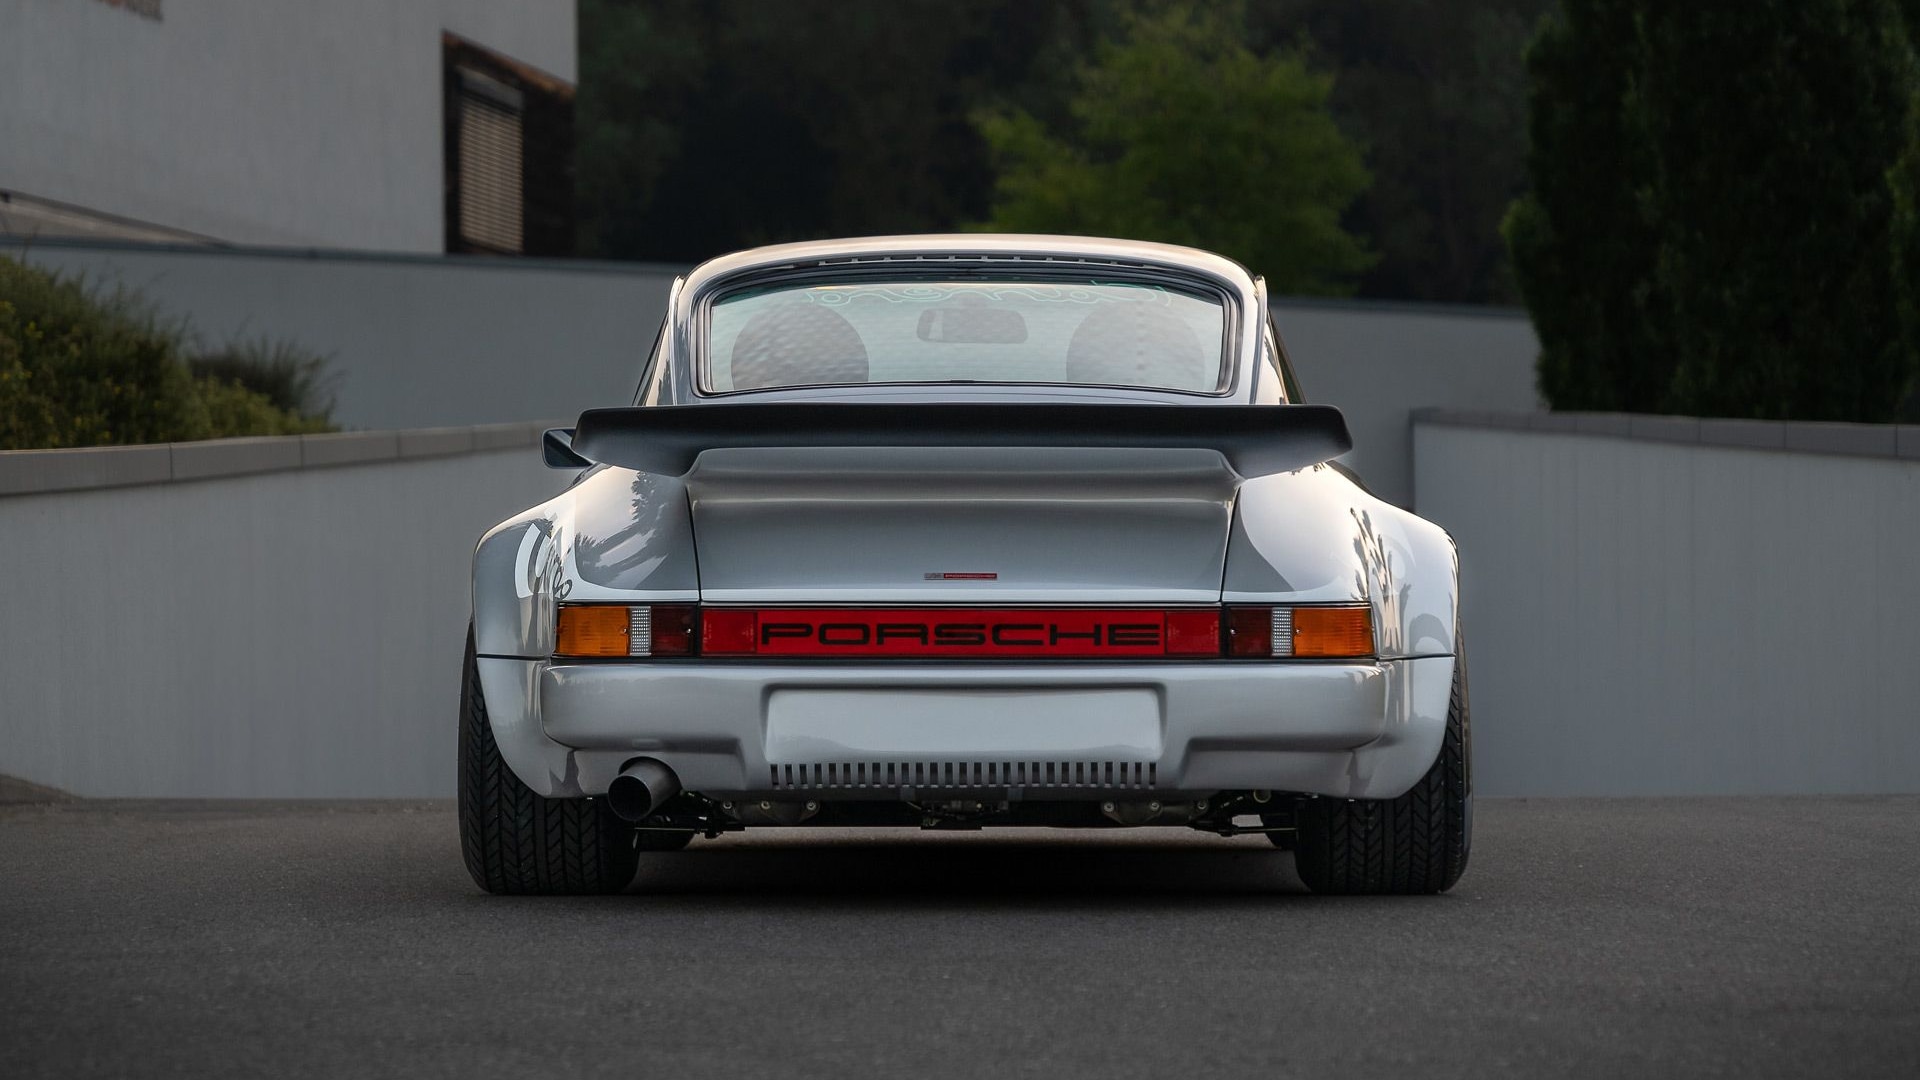 Original Porsche 911 Turbo concept